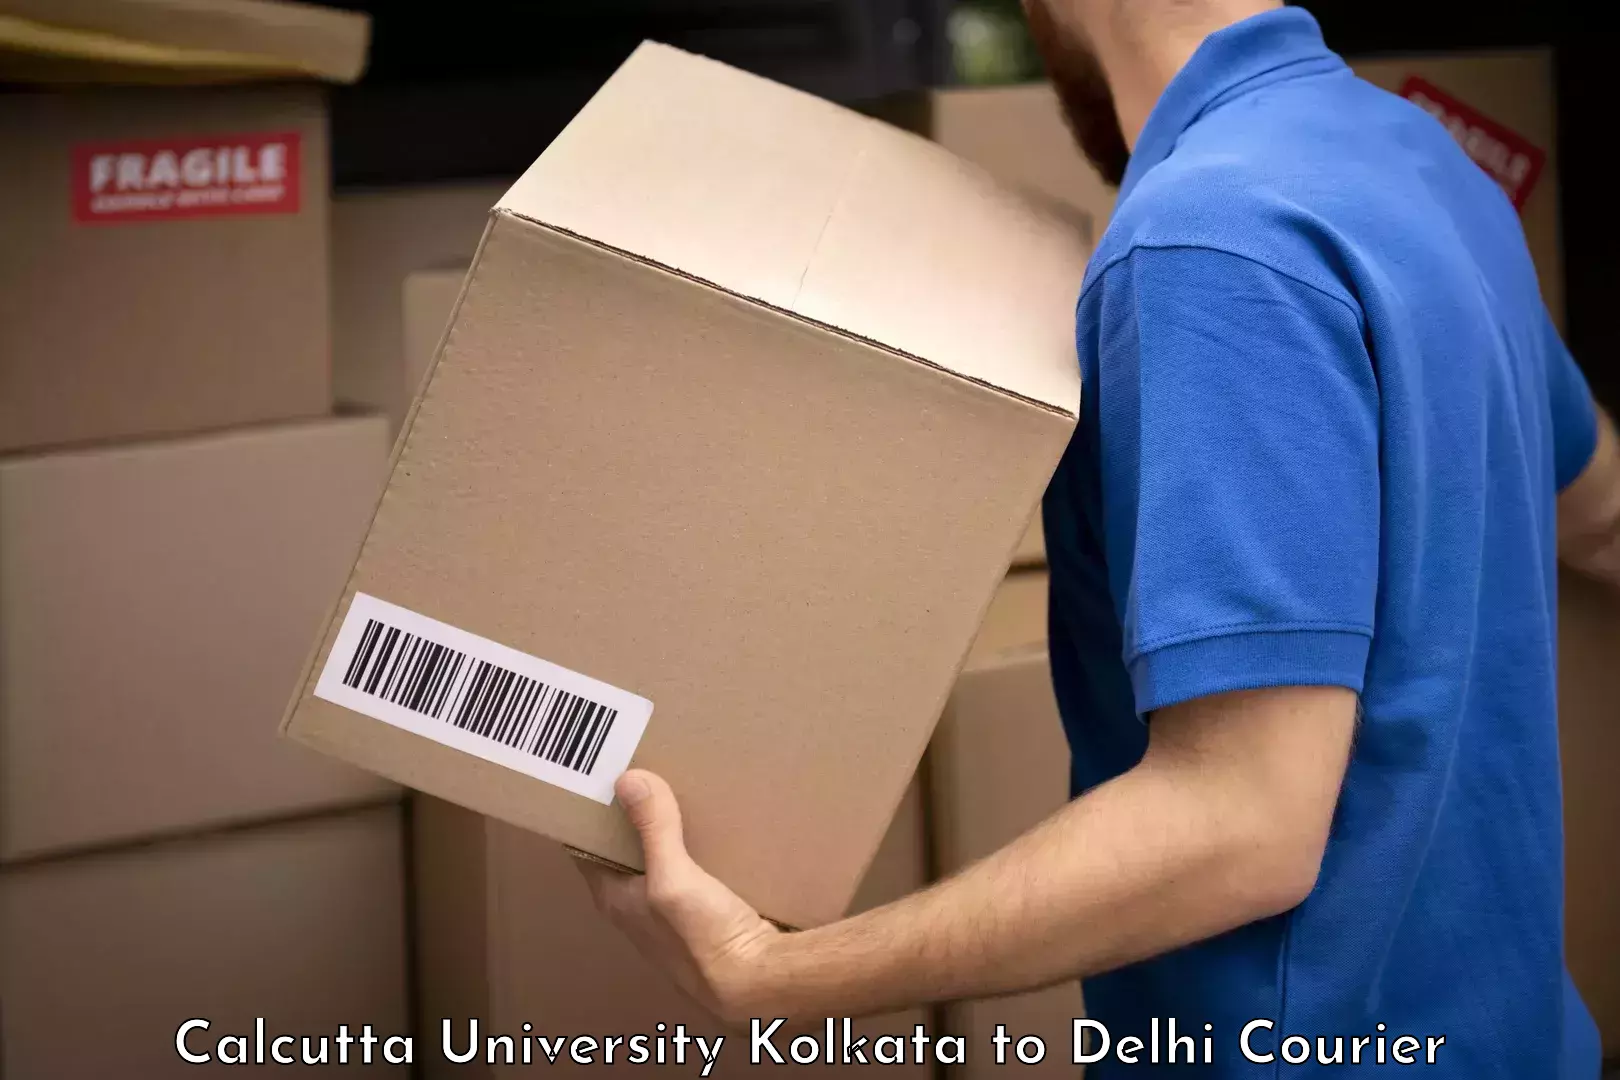 Luggage shipment tracking Calcutta University Kolkata to NIT Delhi